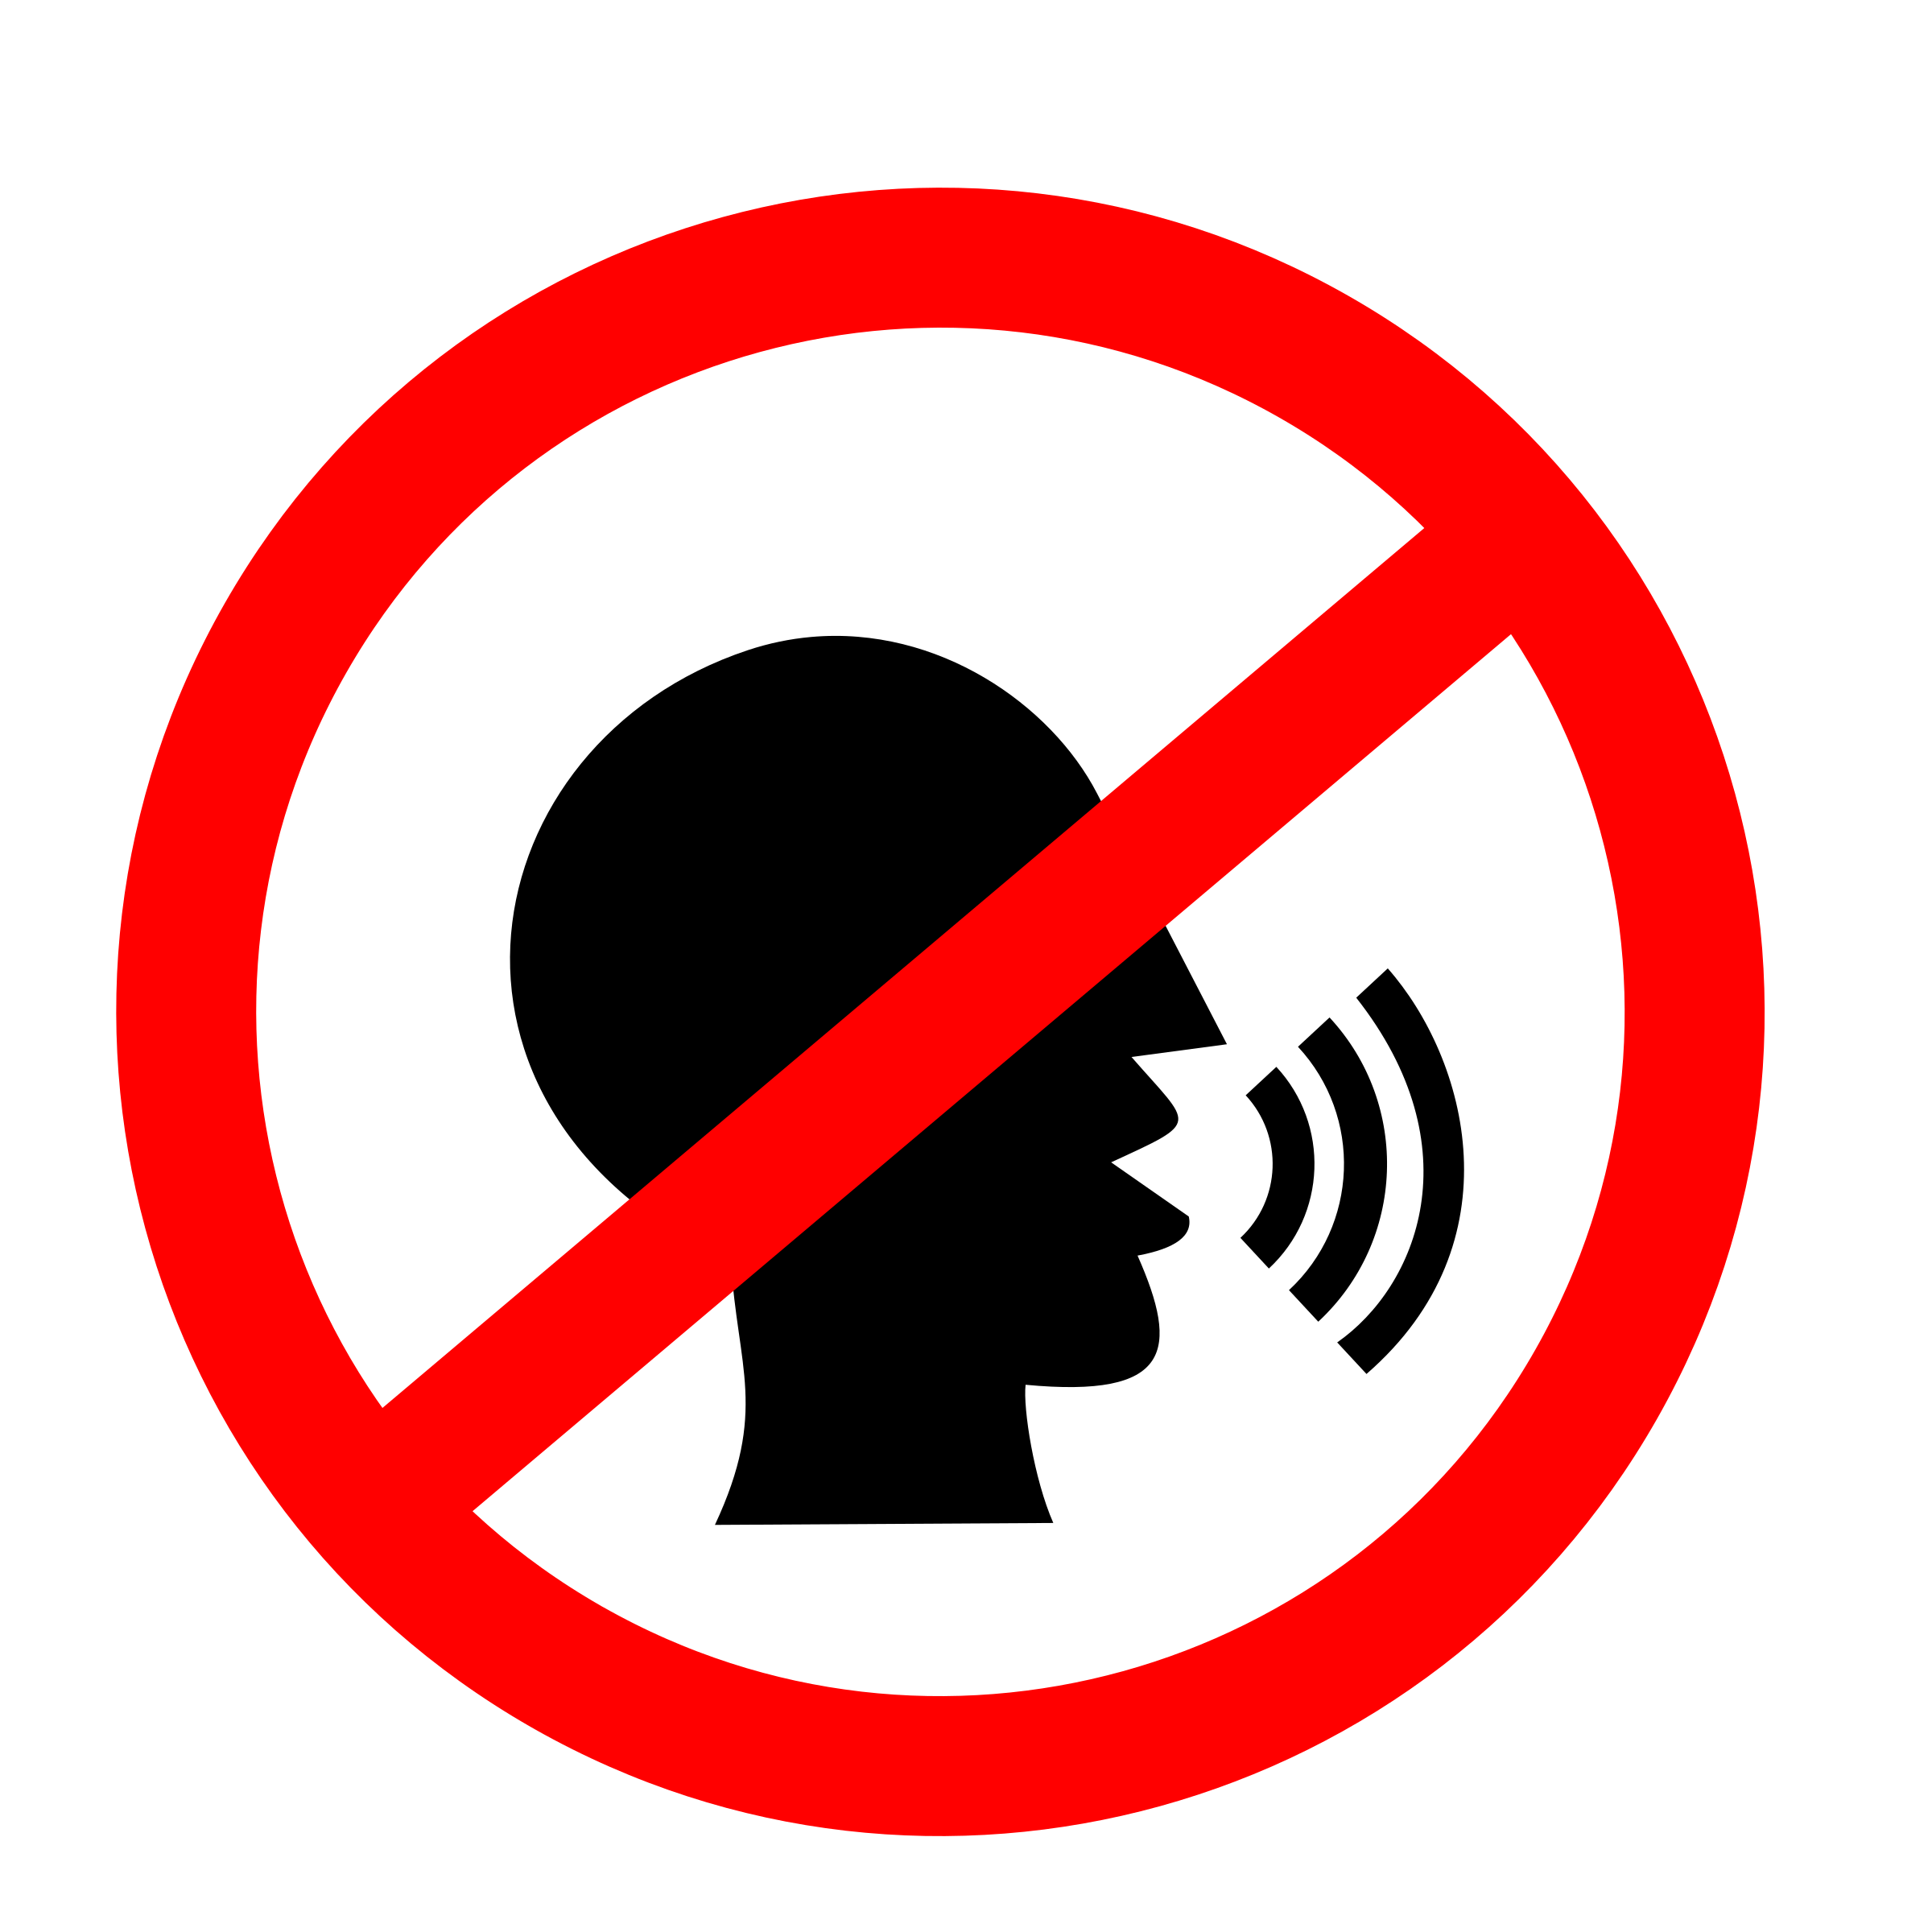 Не шуметь. Знак не шуметь. Значок не шуметь. Кричать запрещено. Пиктограмма не шуметь.